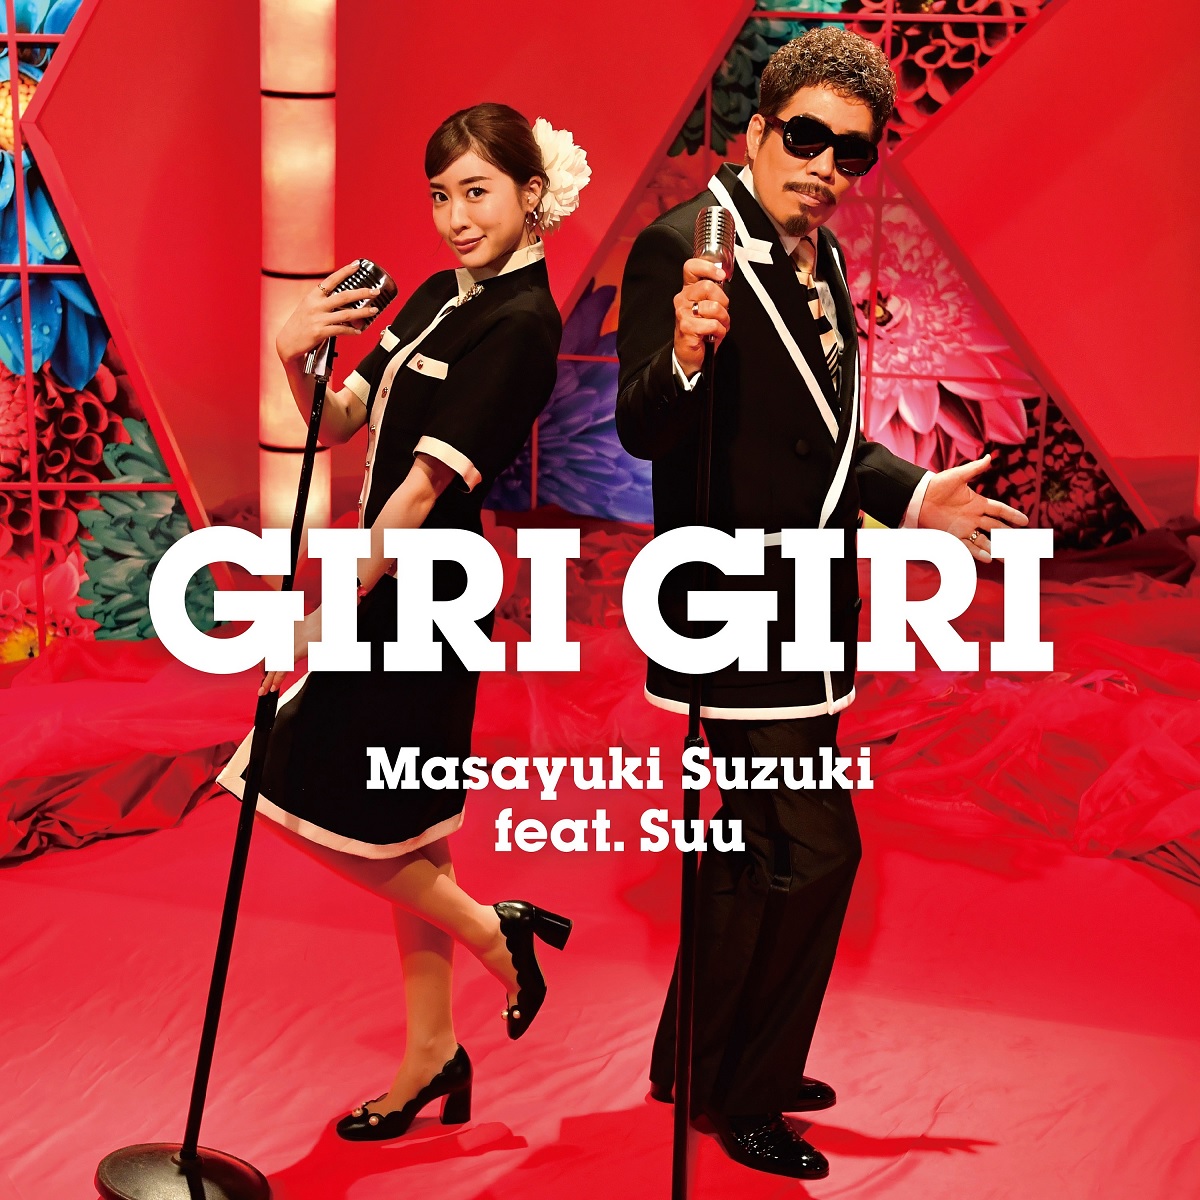 Cover art for『Masayuki Suzuki feat. Suu - GIRI GIRI』from the release『GIRI GIRI